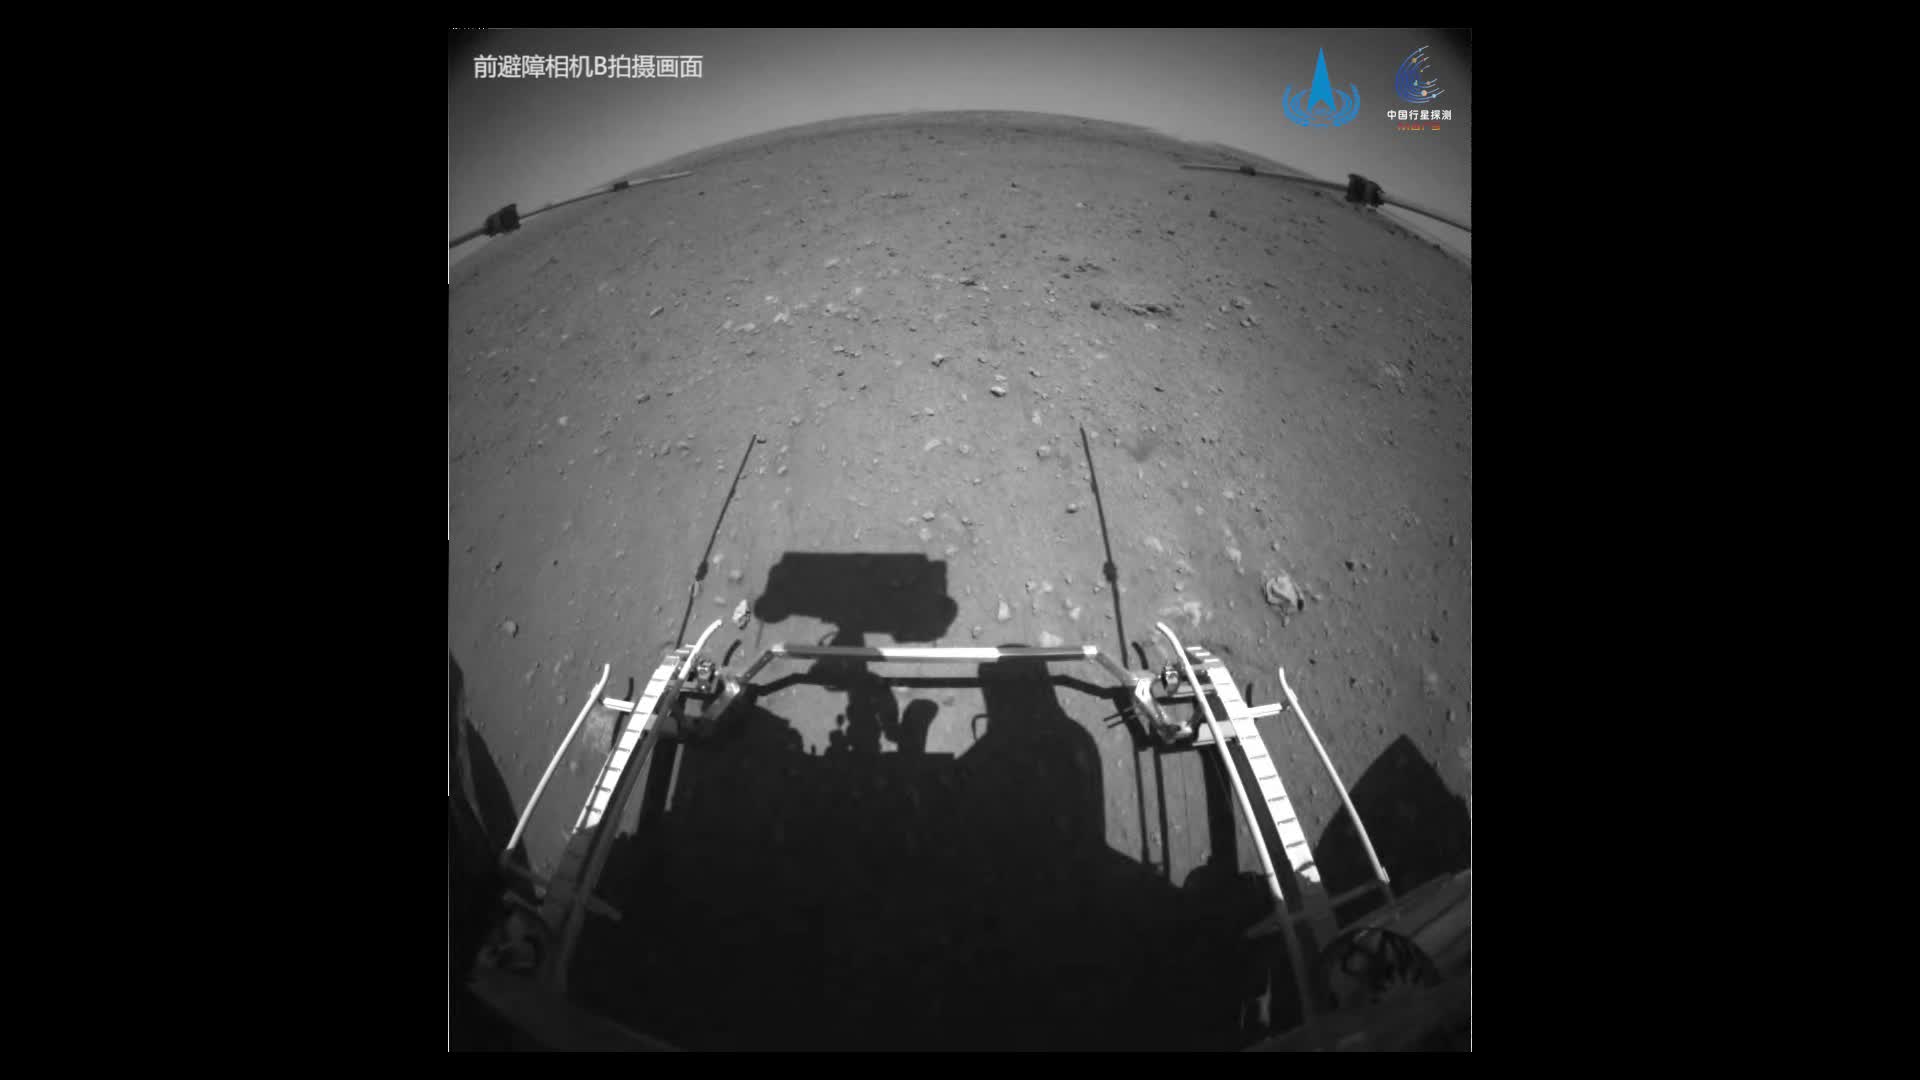 祝融号火星车拍摄影像发布 成功驶上火星表面